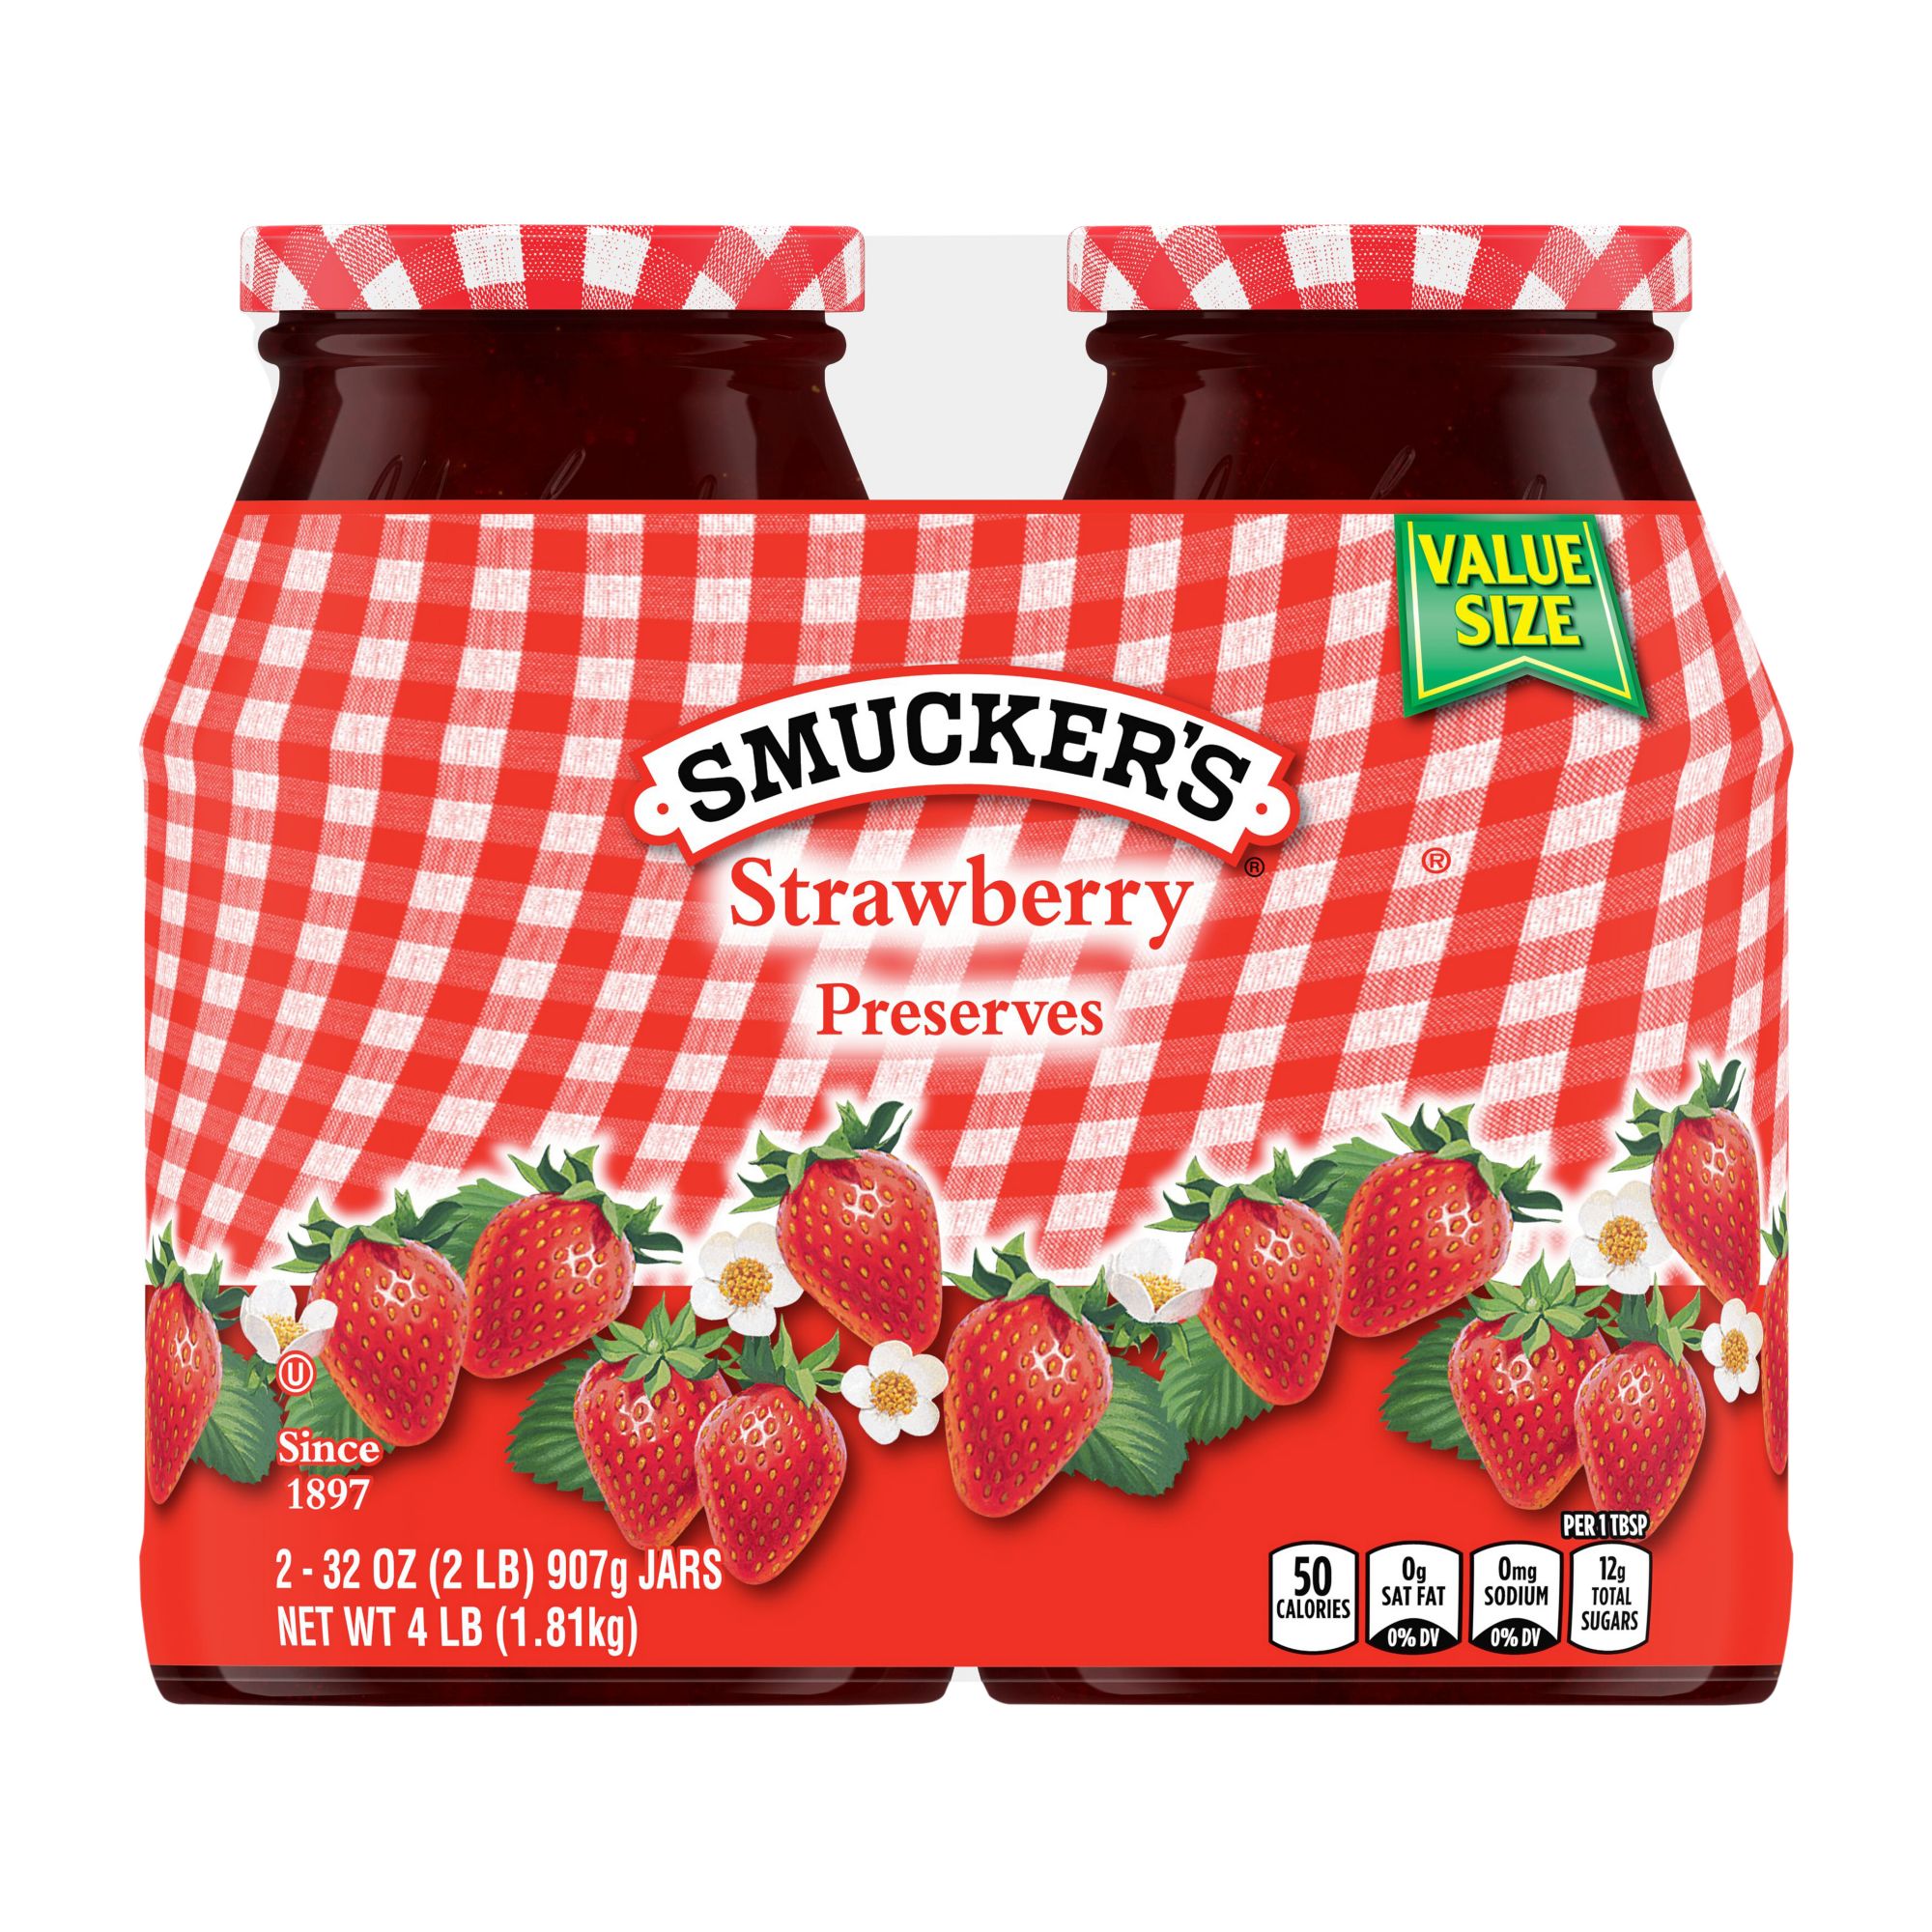 Strawberry jam jar with spoon – Backyard Bee